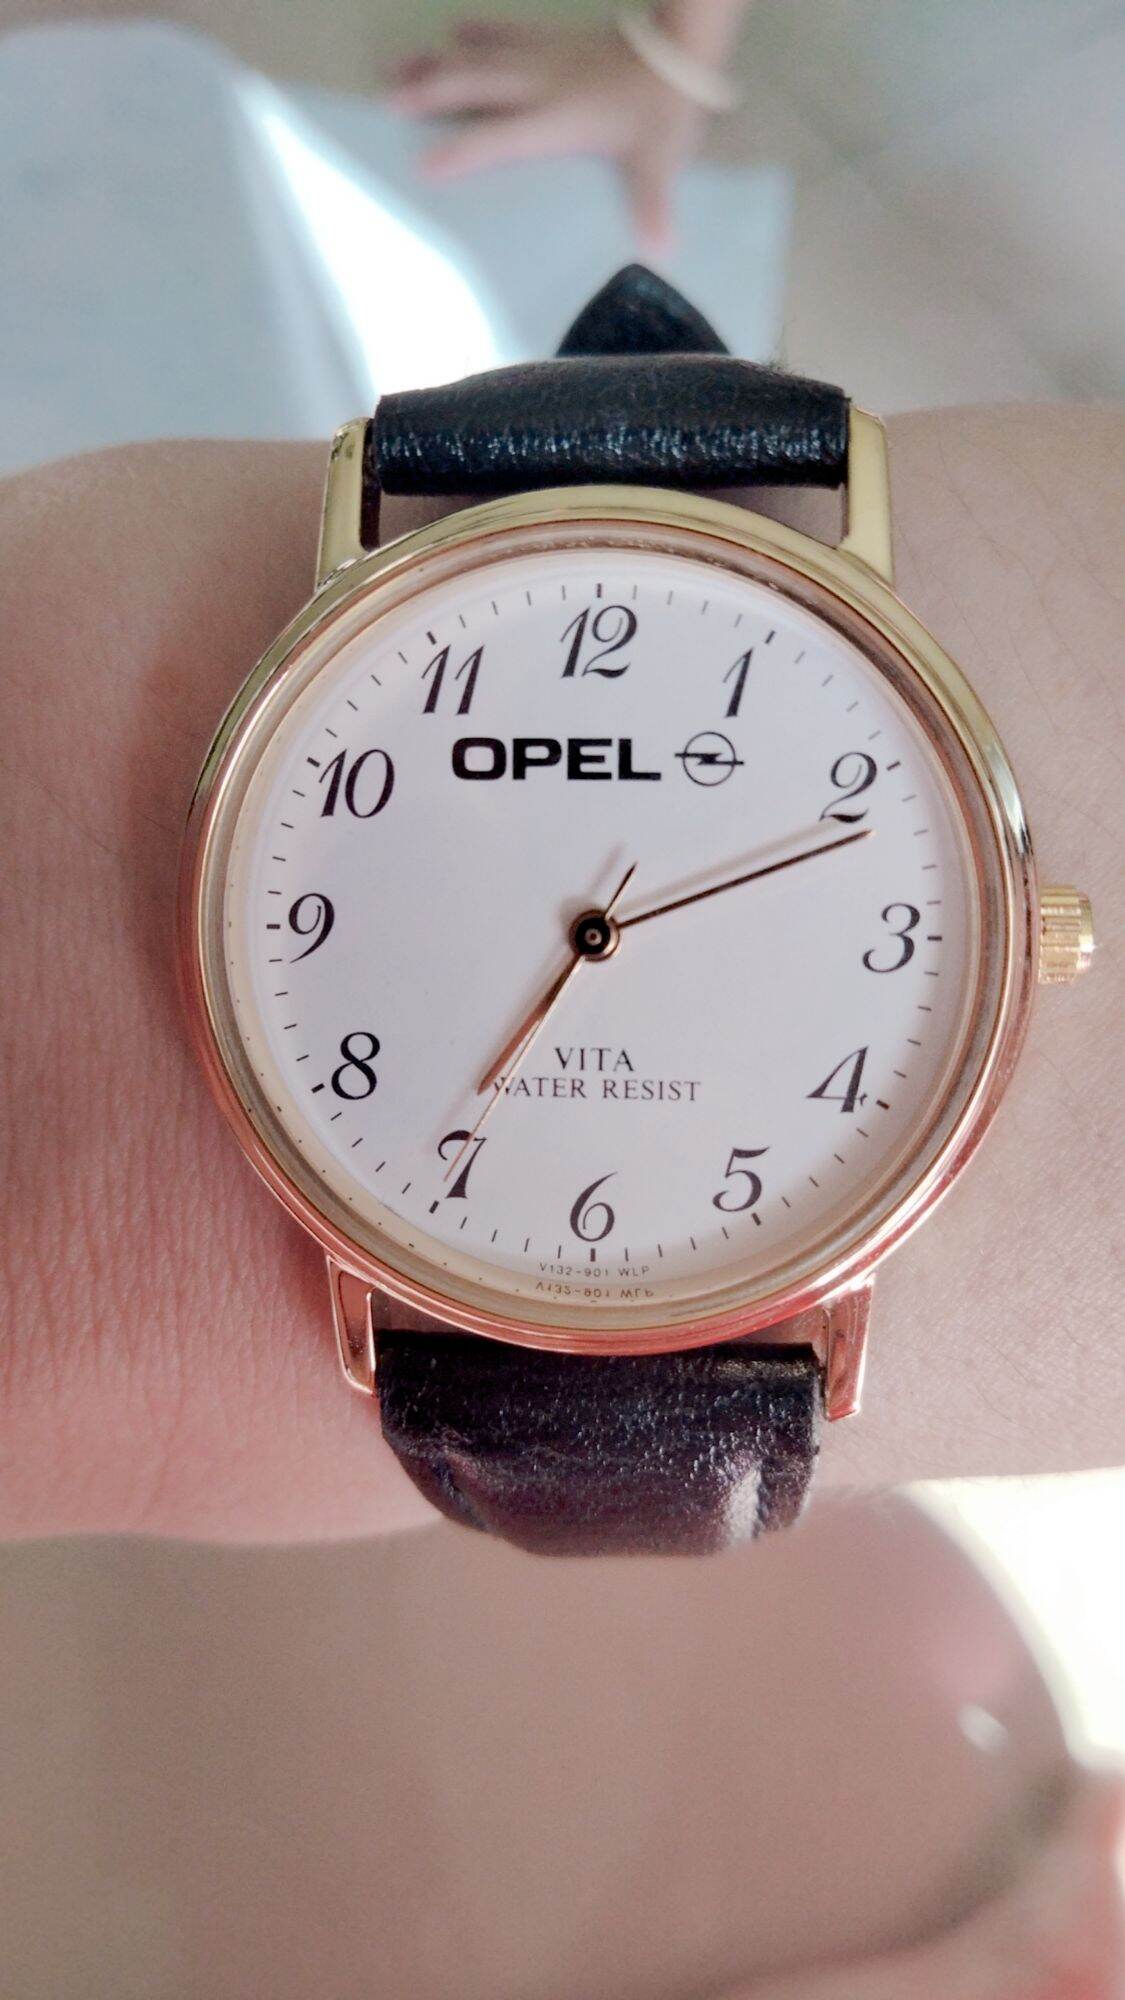 1 đồng hồ Nữ thương hiệu Opel nội địa Nhật.Mặt bọc vàng, size mặt 30-31,5,cọc số học trò, dây khoá zin theo đồng hồ.Độ mới 95%.